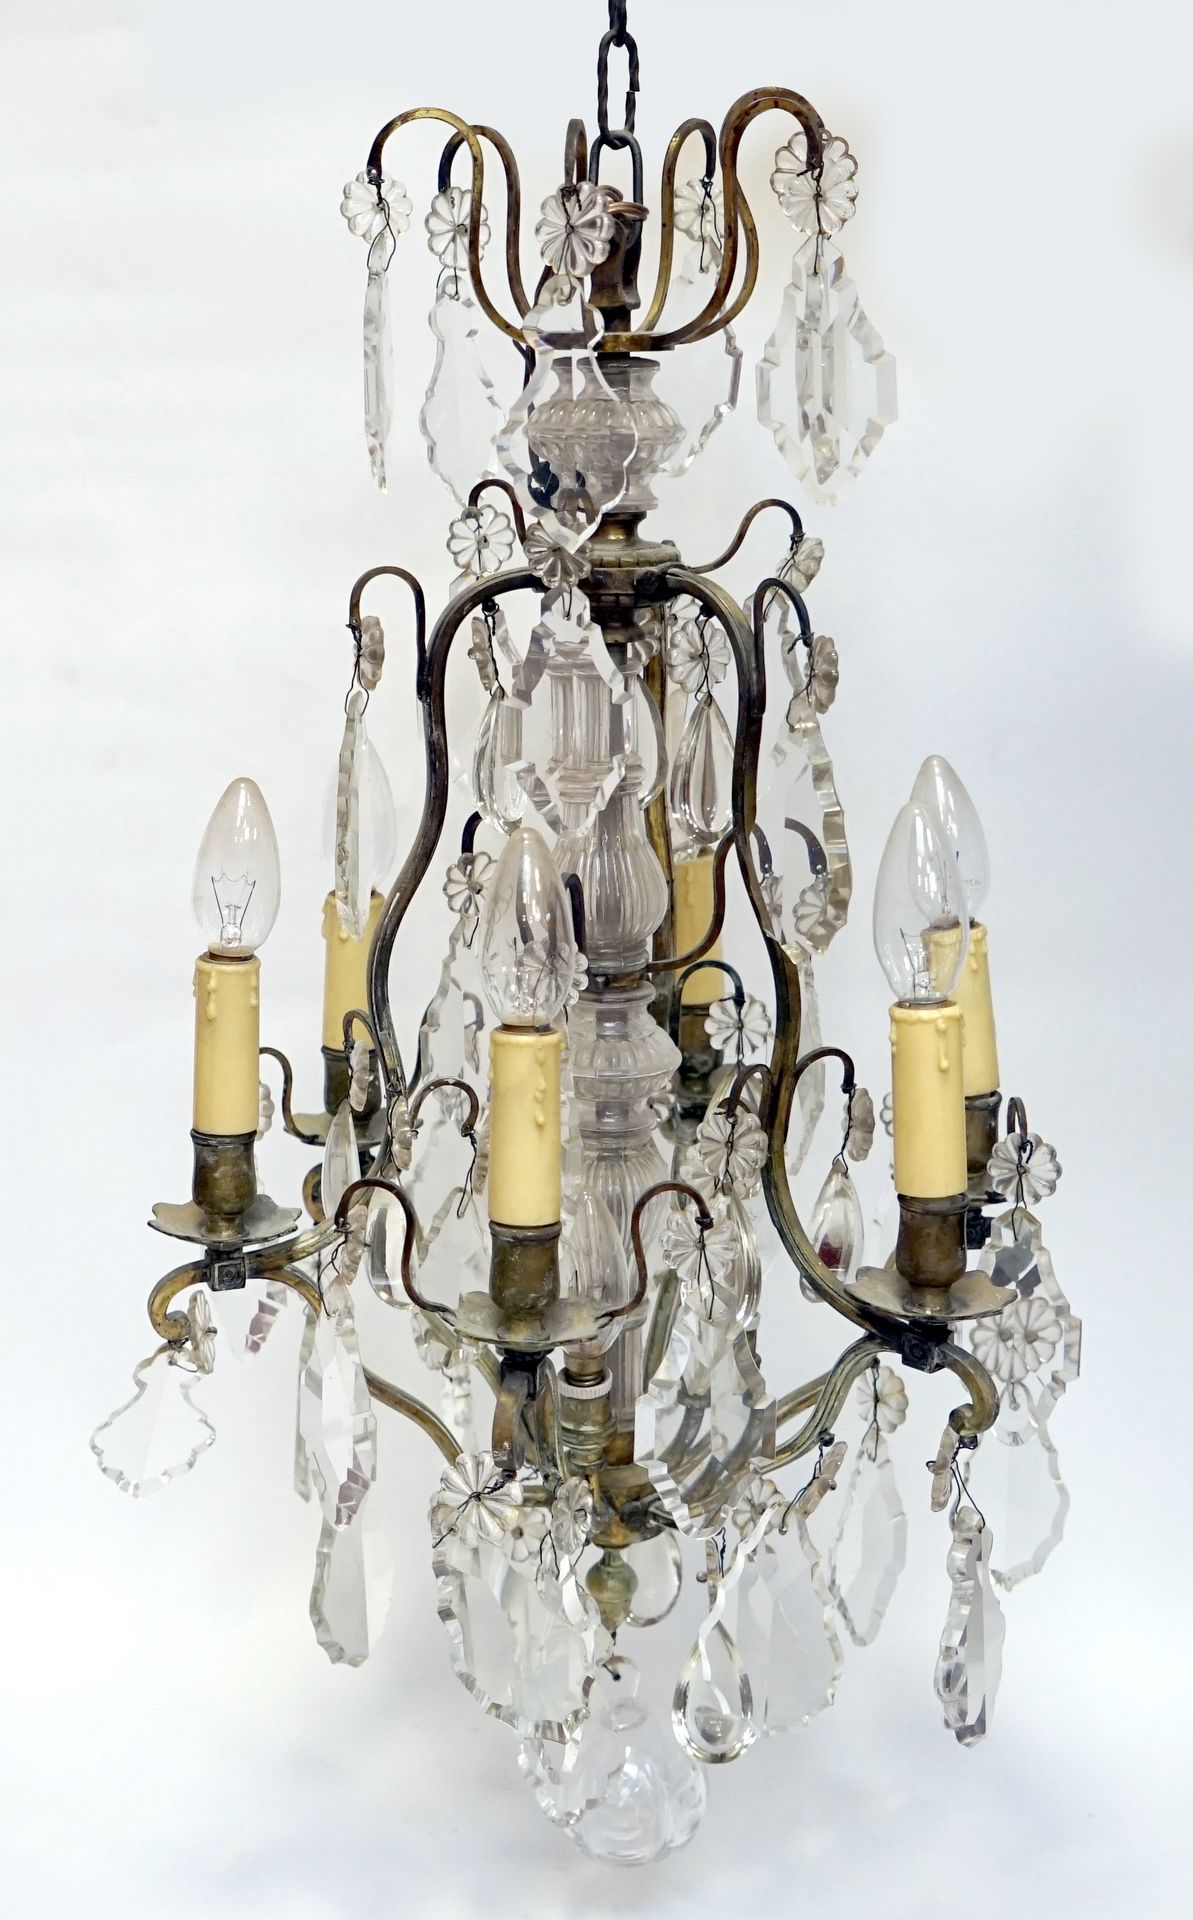 Null 一件路易十五风格的水晶和鎏金铜吊坠的小型USTRE。高度为75厘米。